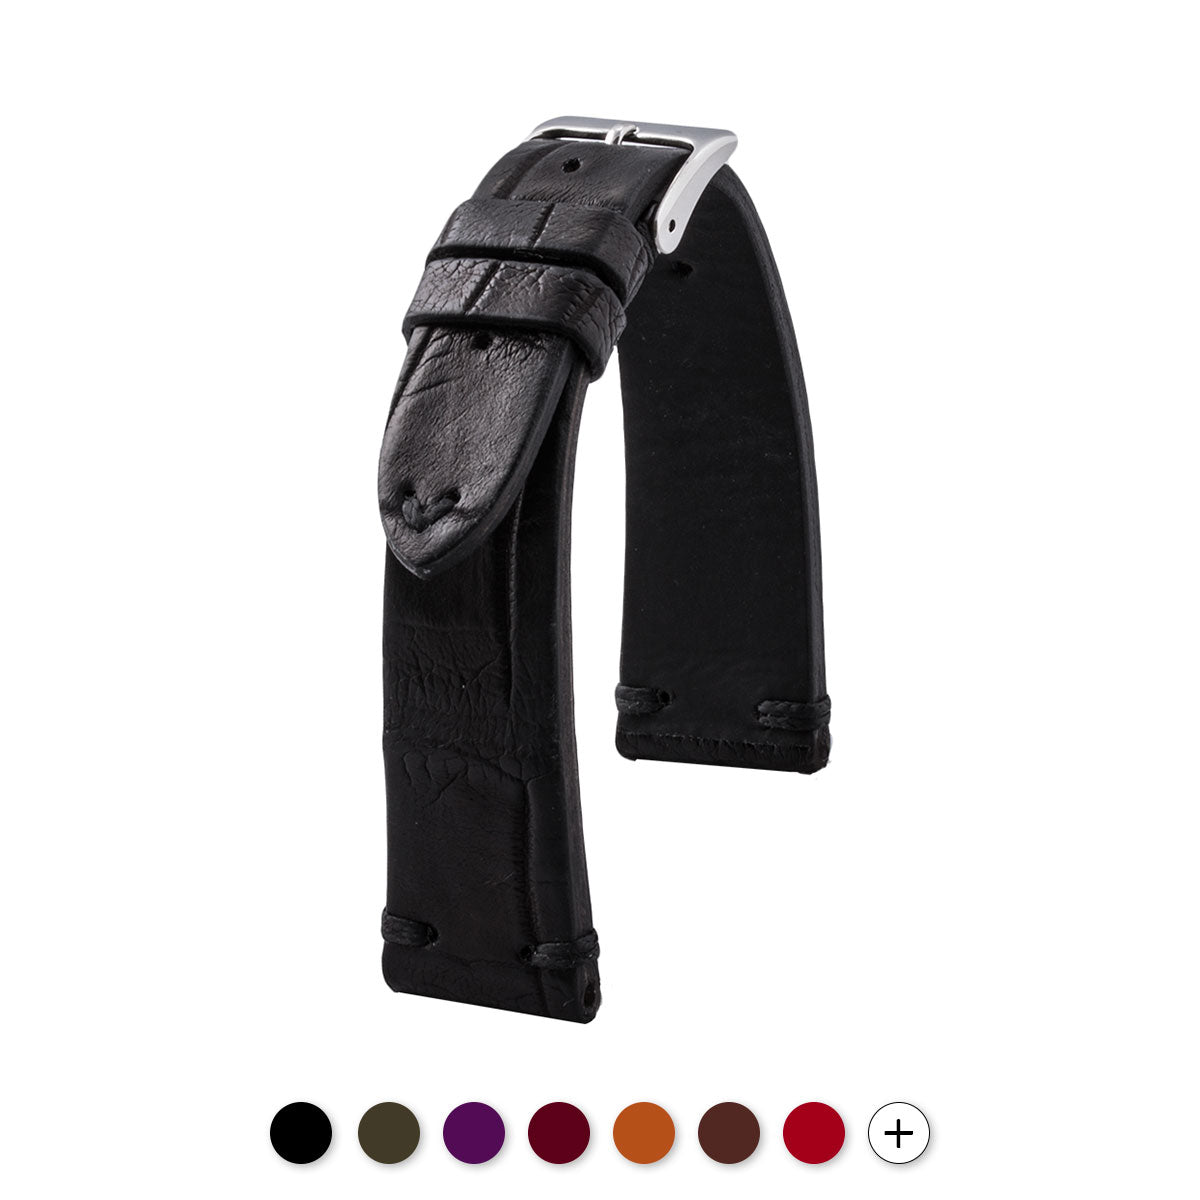 Bracelet Vintage - Bracelet-montre cuir - Alligator (noir, marron, kaki, bordeaux, rouge, violet) - watch band leather strap - ABP Concept -